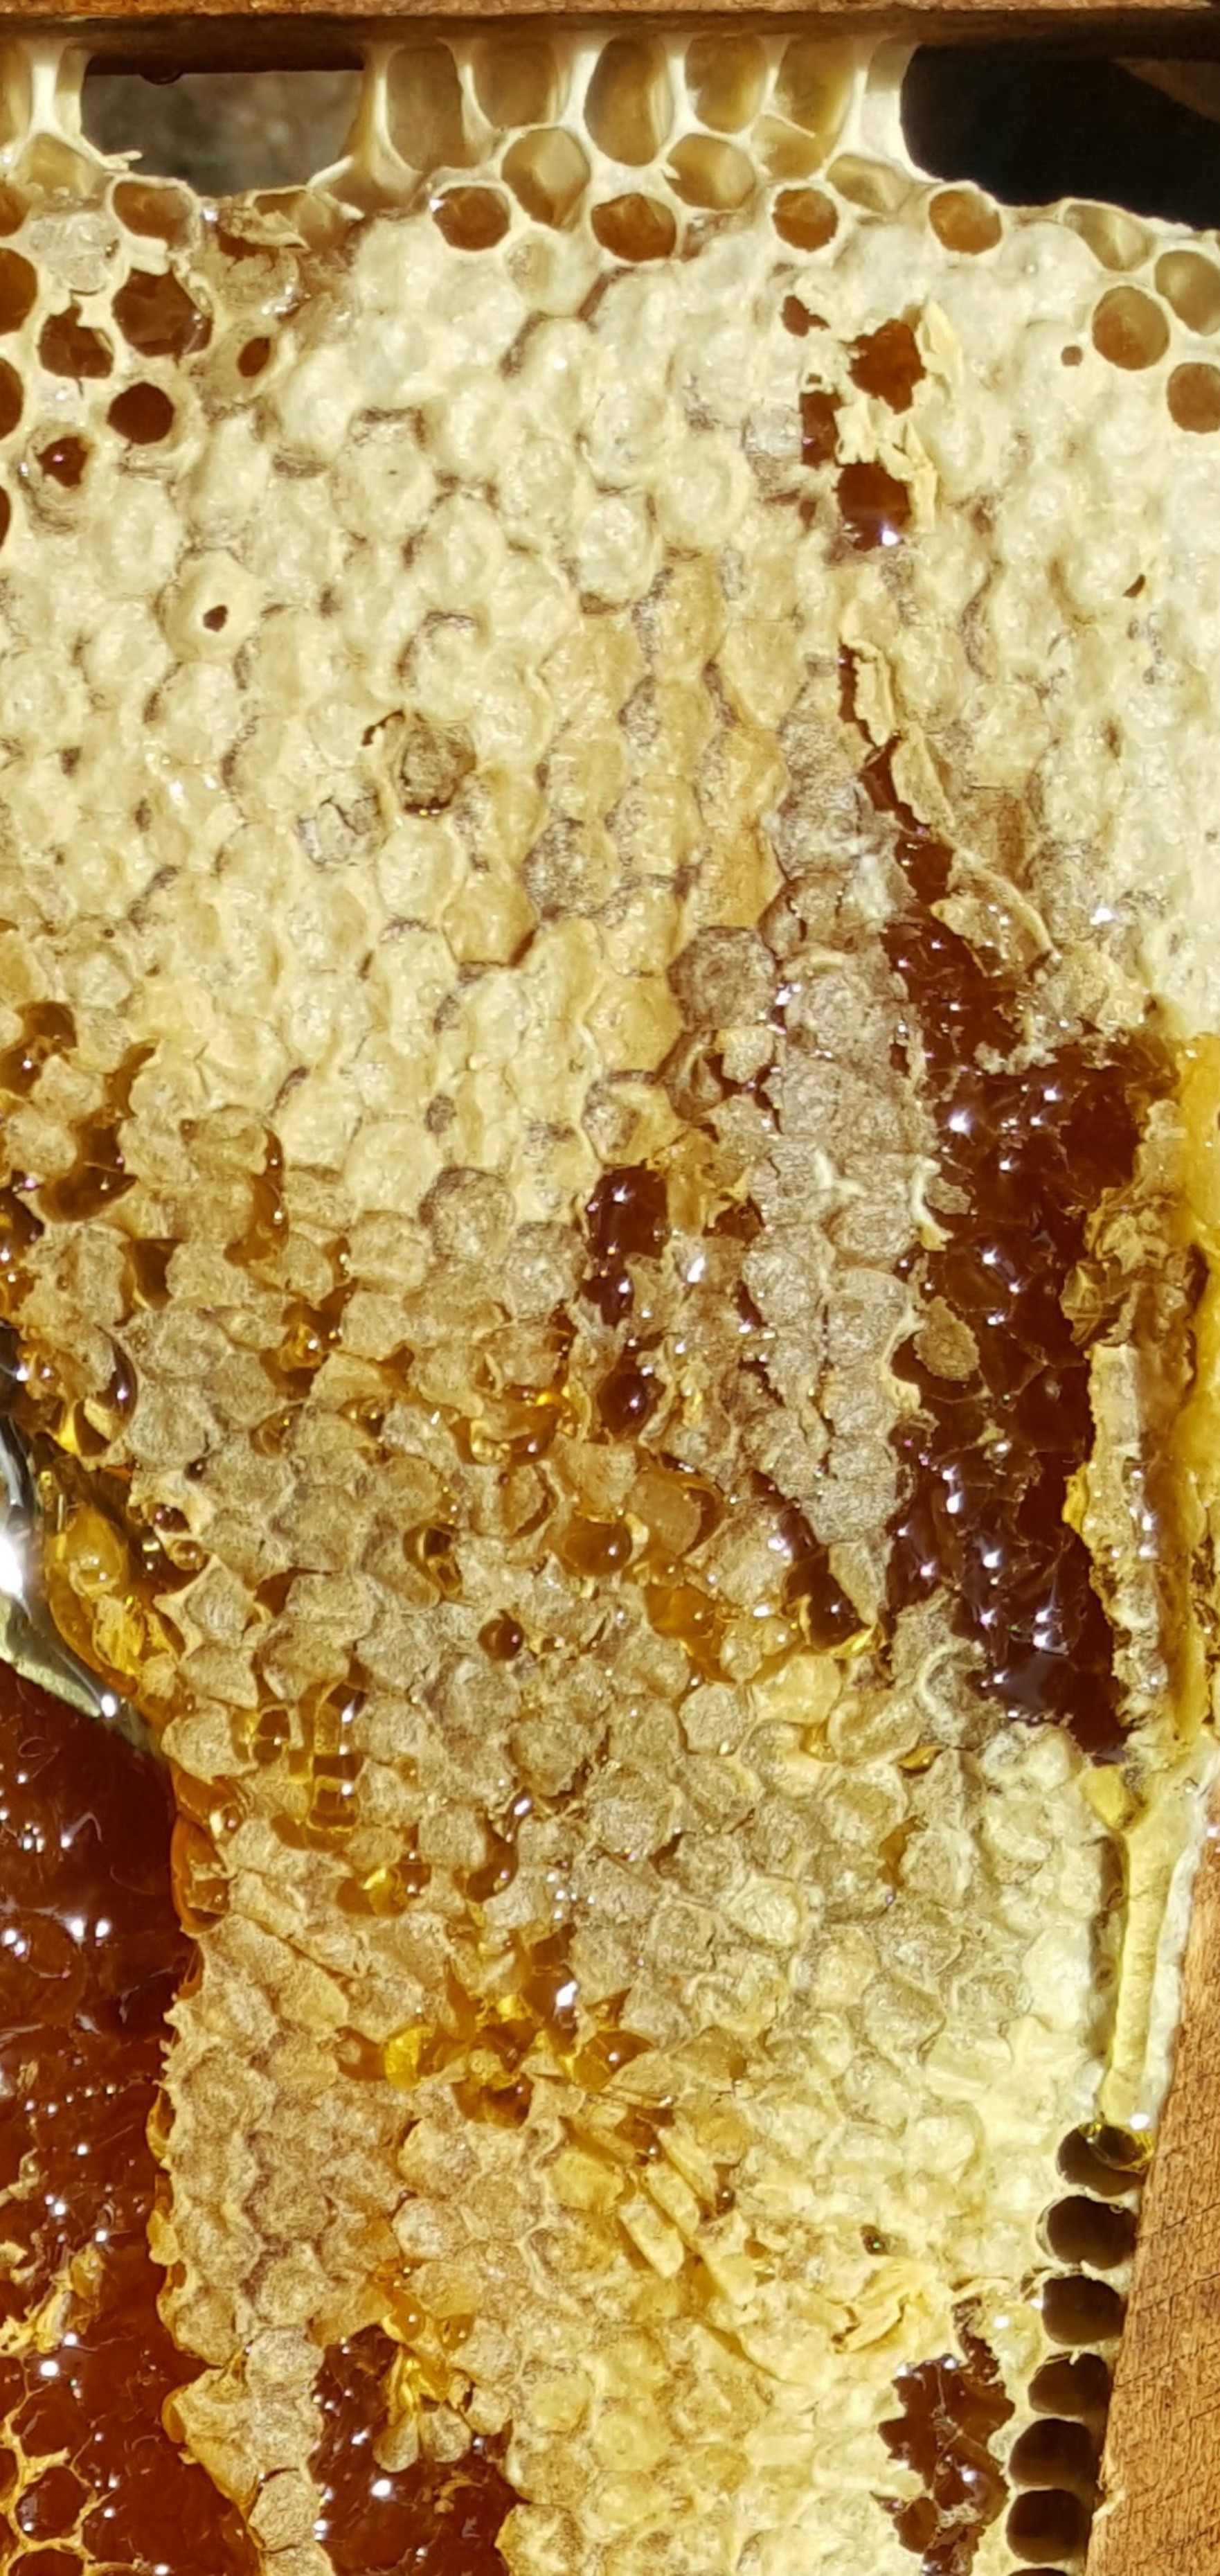 Mật ong rừng Hoa Miền Núi dạng tuýp tiện dụng 130g - 100% mật ong chín Honimore 